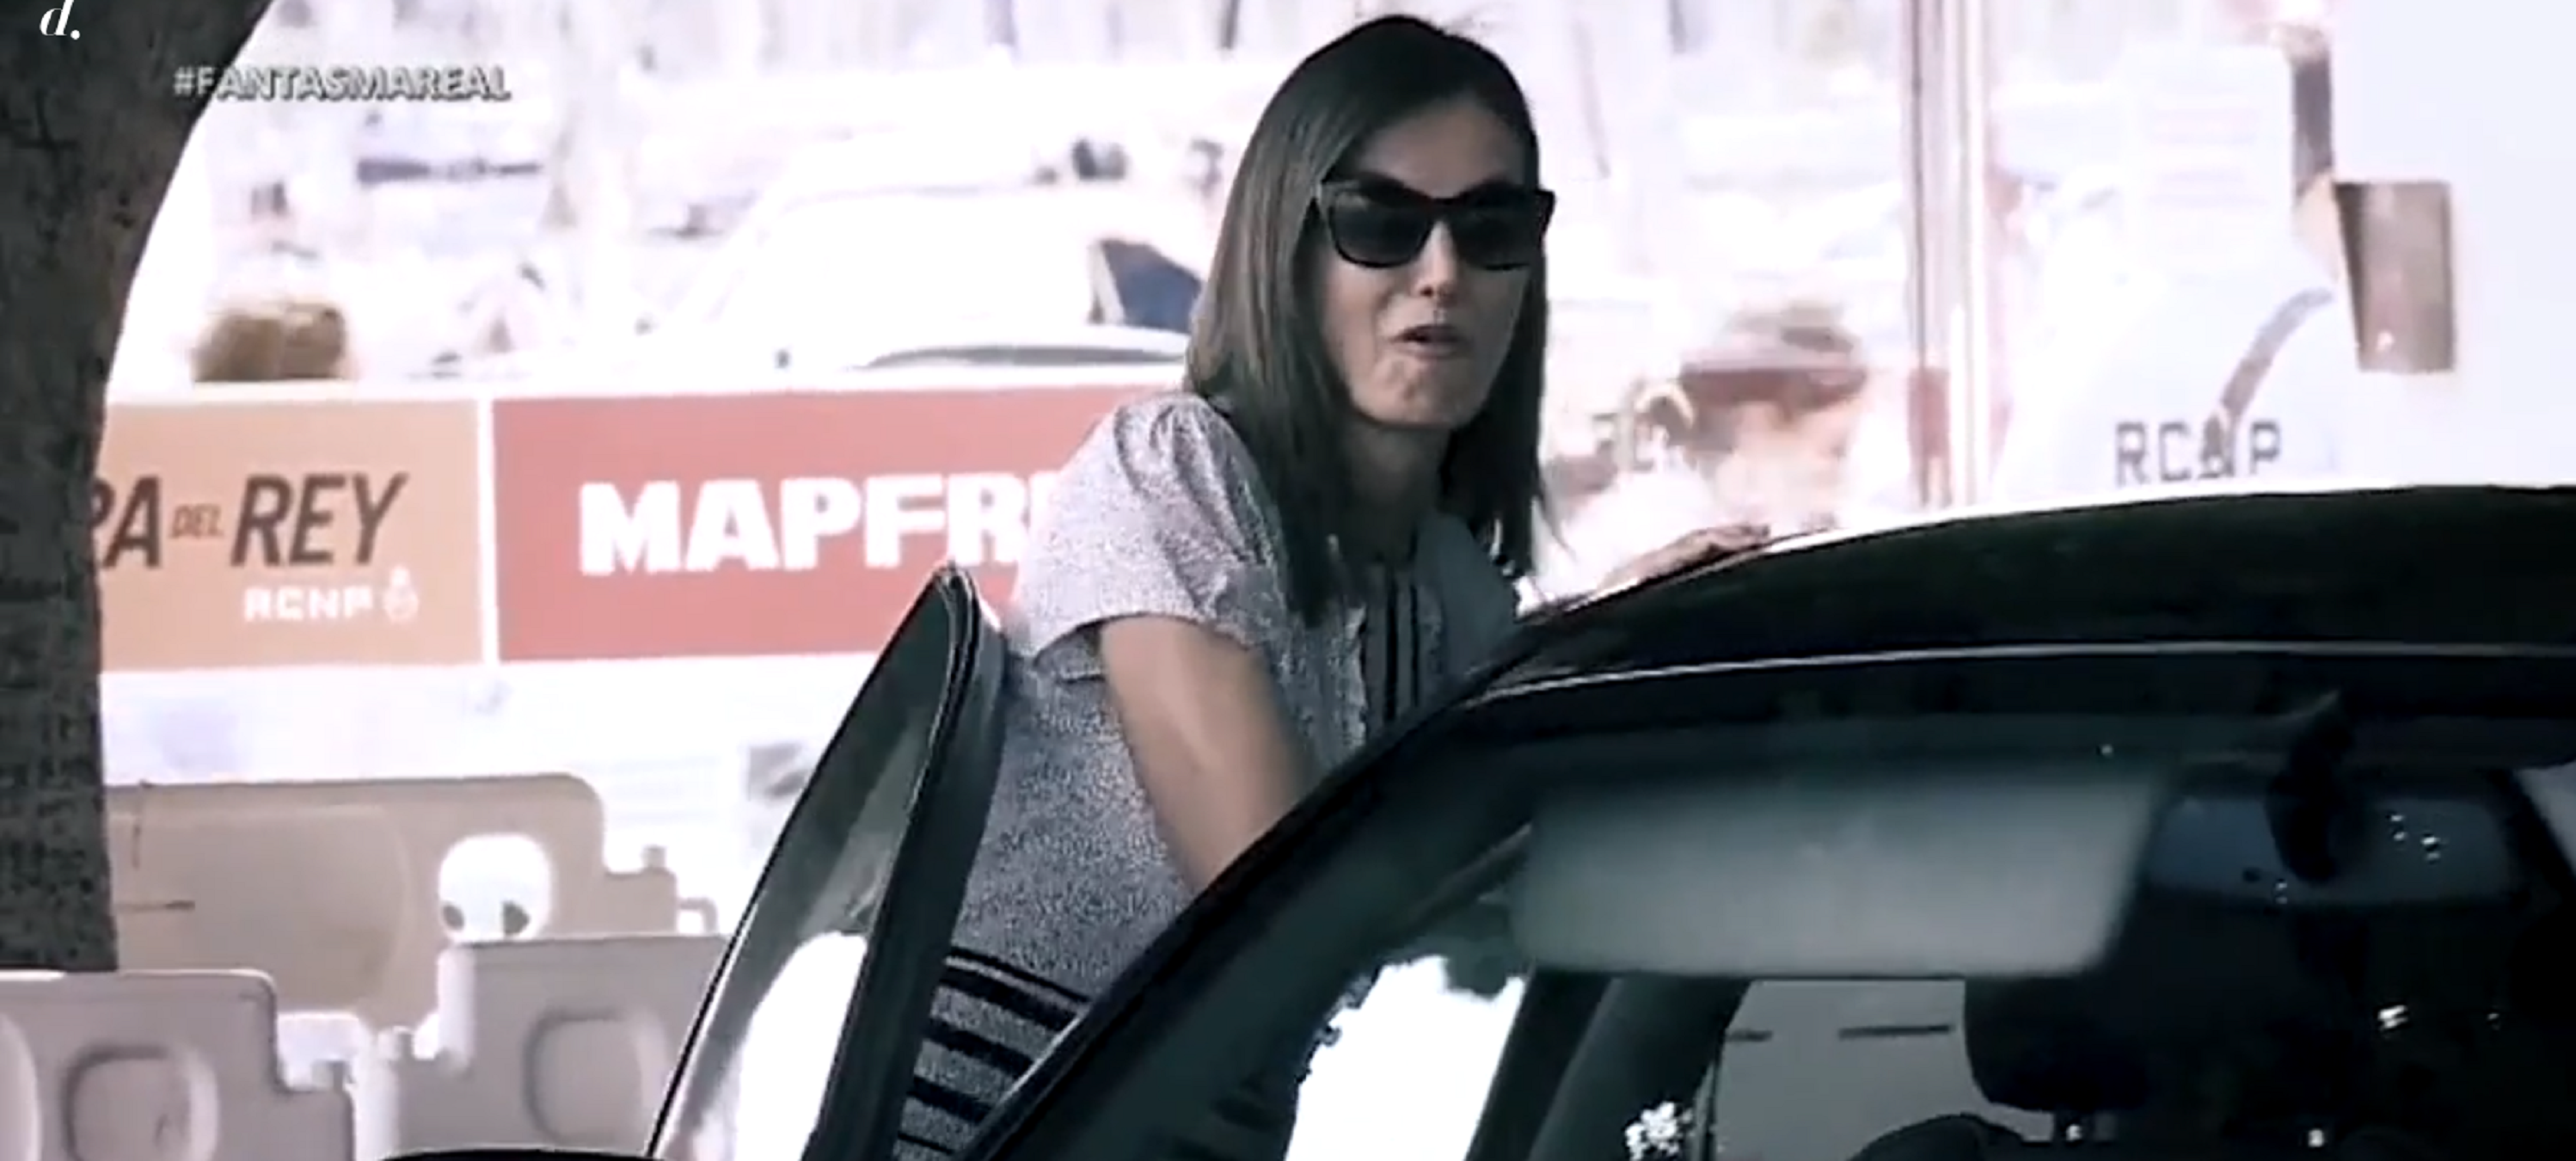 El ridícul vídeo de la reina Letícia aixafada pel seu cotxe oficial blindat